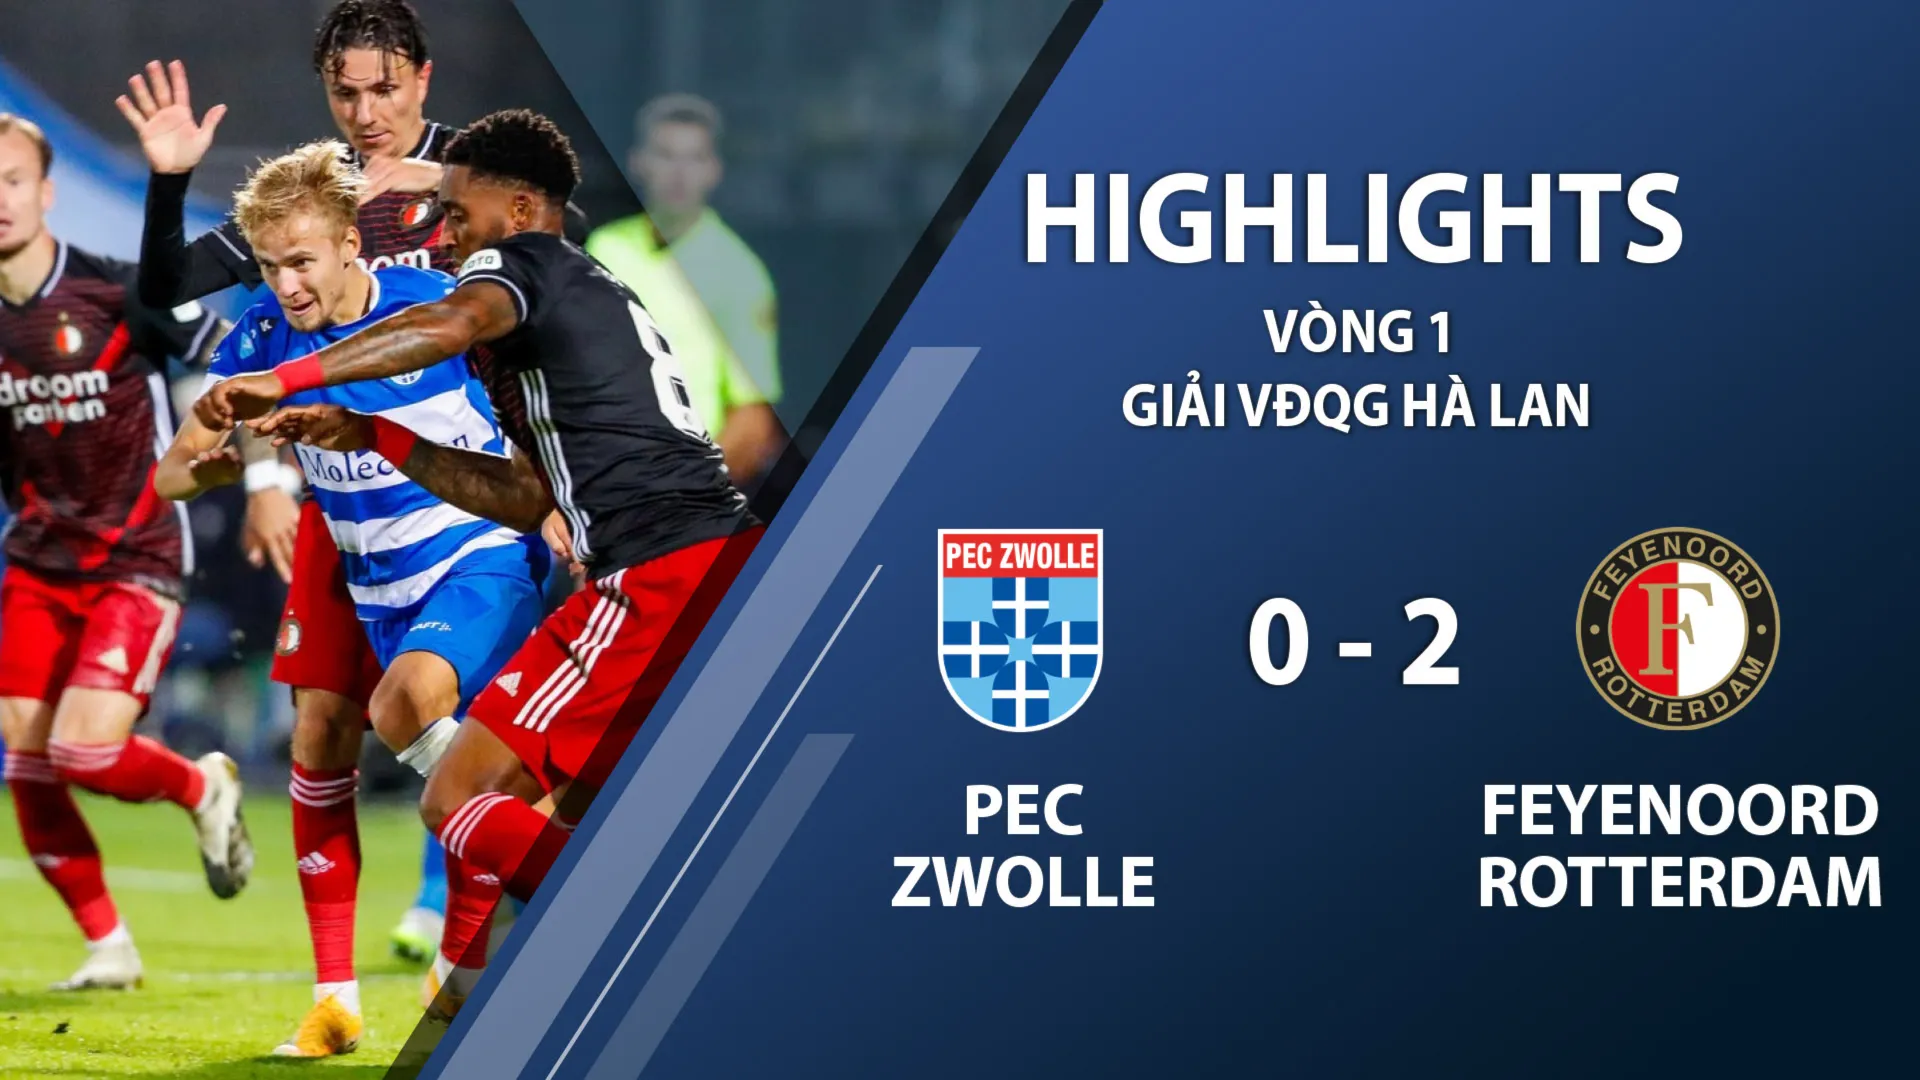 Highlights PEC Zwolle 0-2 Feyenoord (vòng 1 giải VĐQG Hà Lan 2020/21)